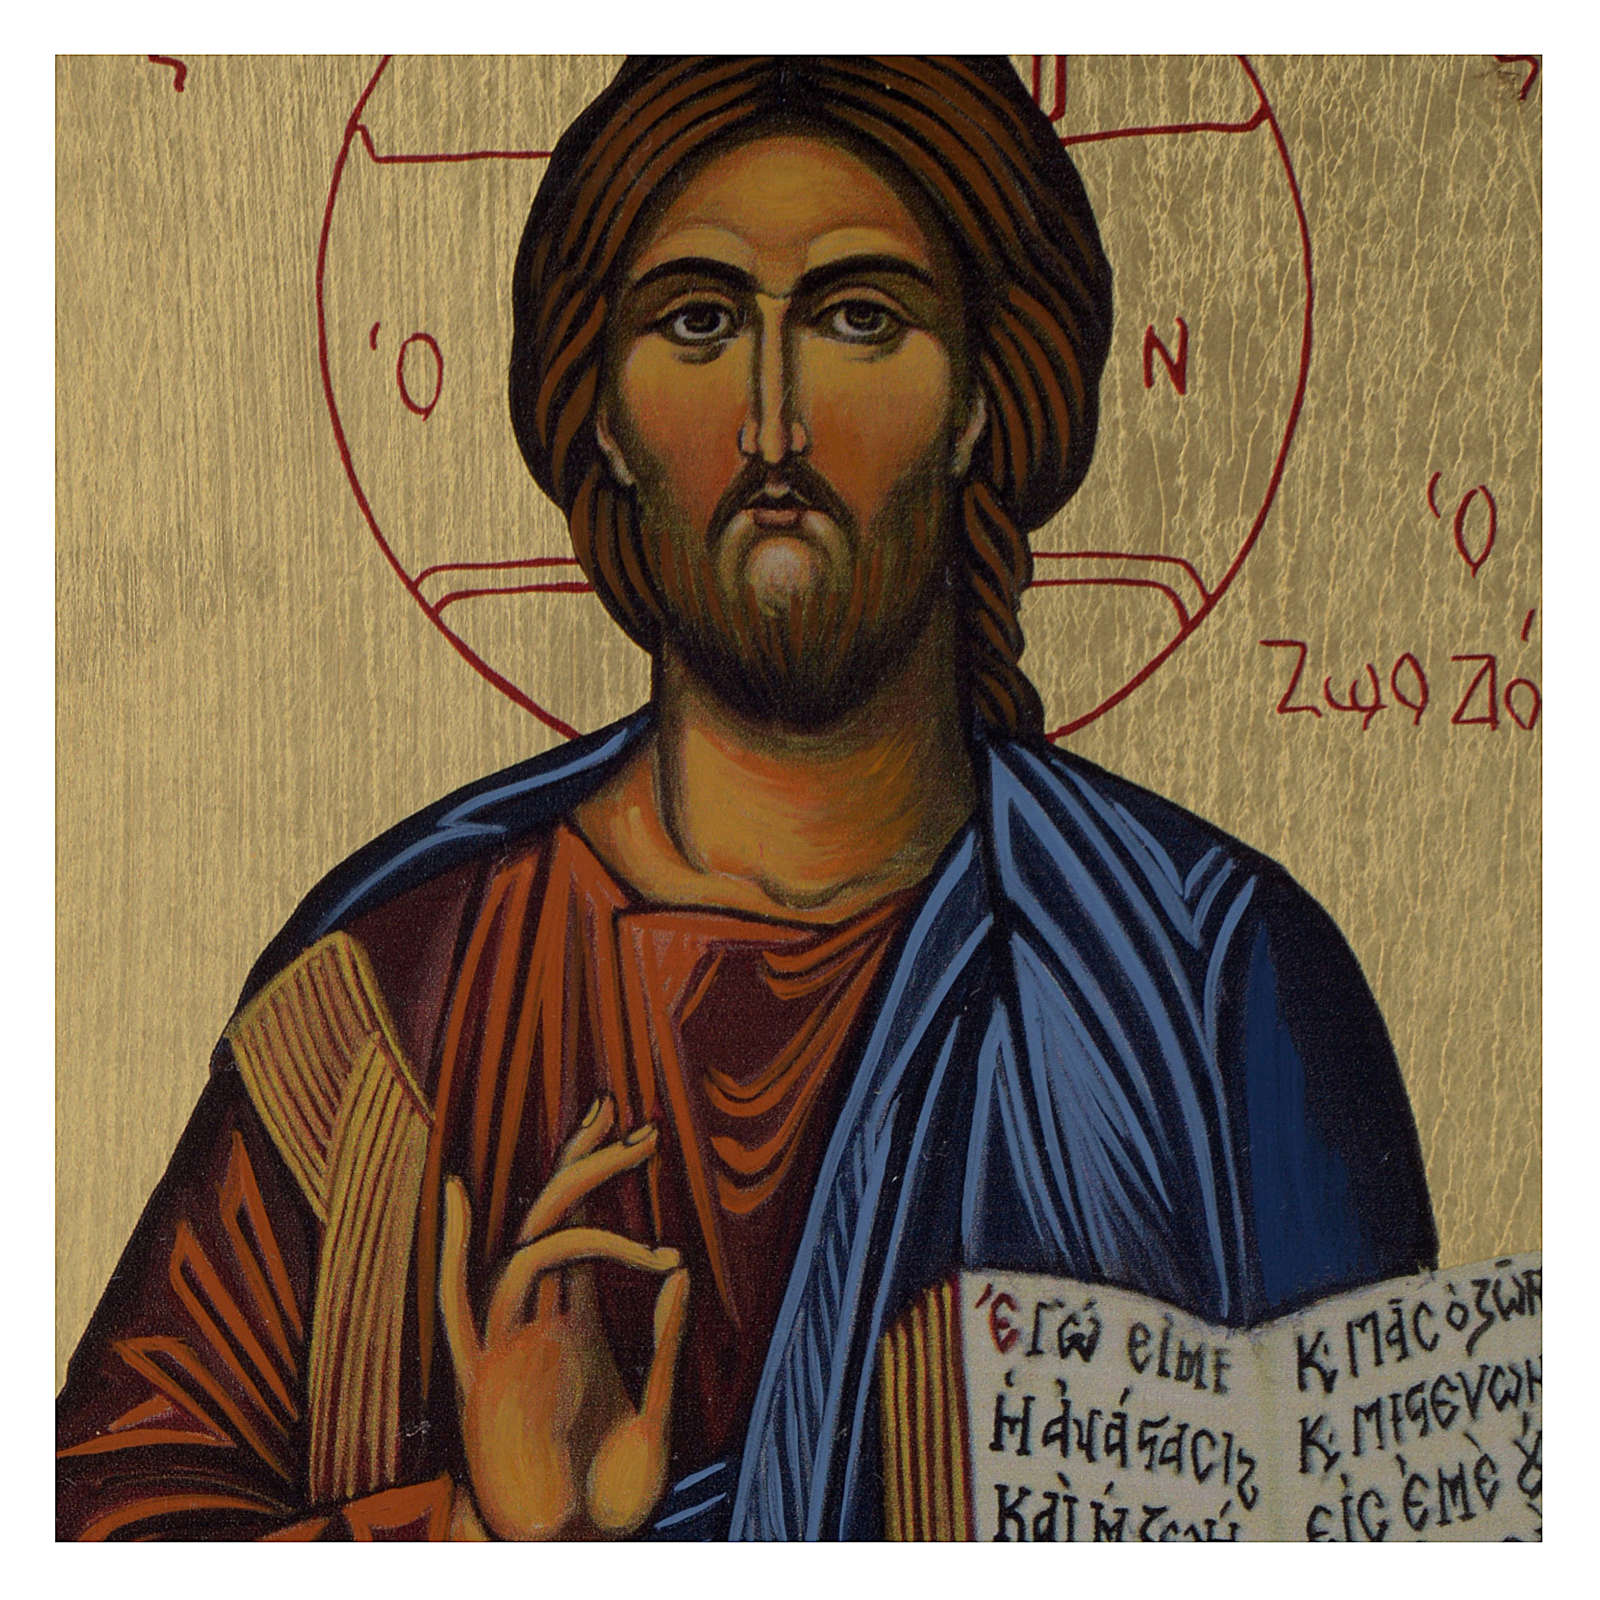 Ikone Christus Pantokrator im byzantinischen Stil, | Online Verfauf auf